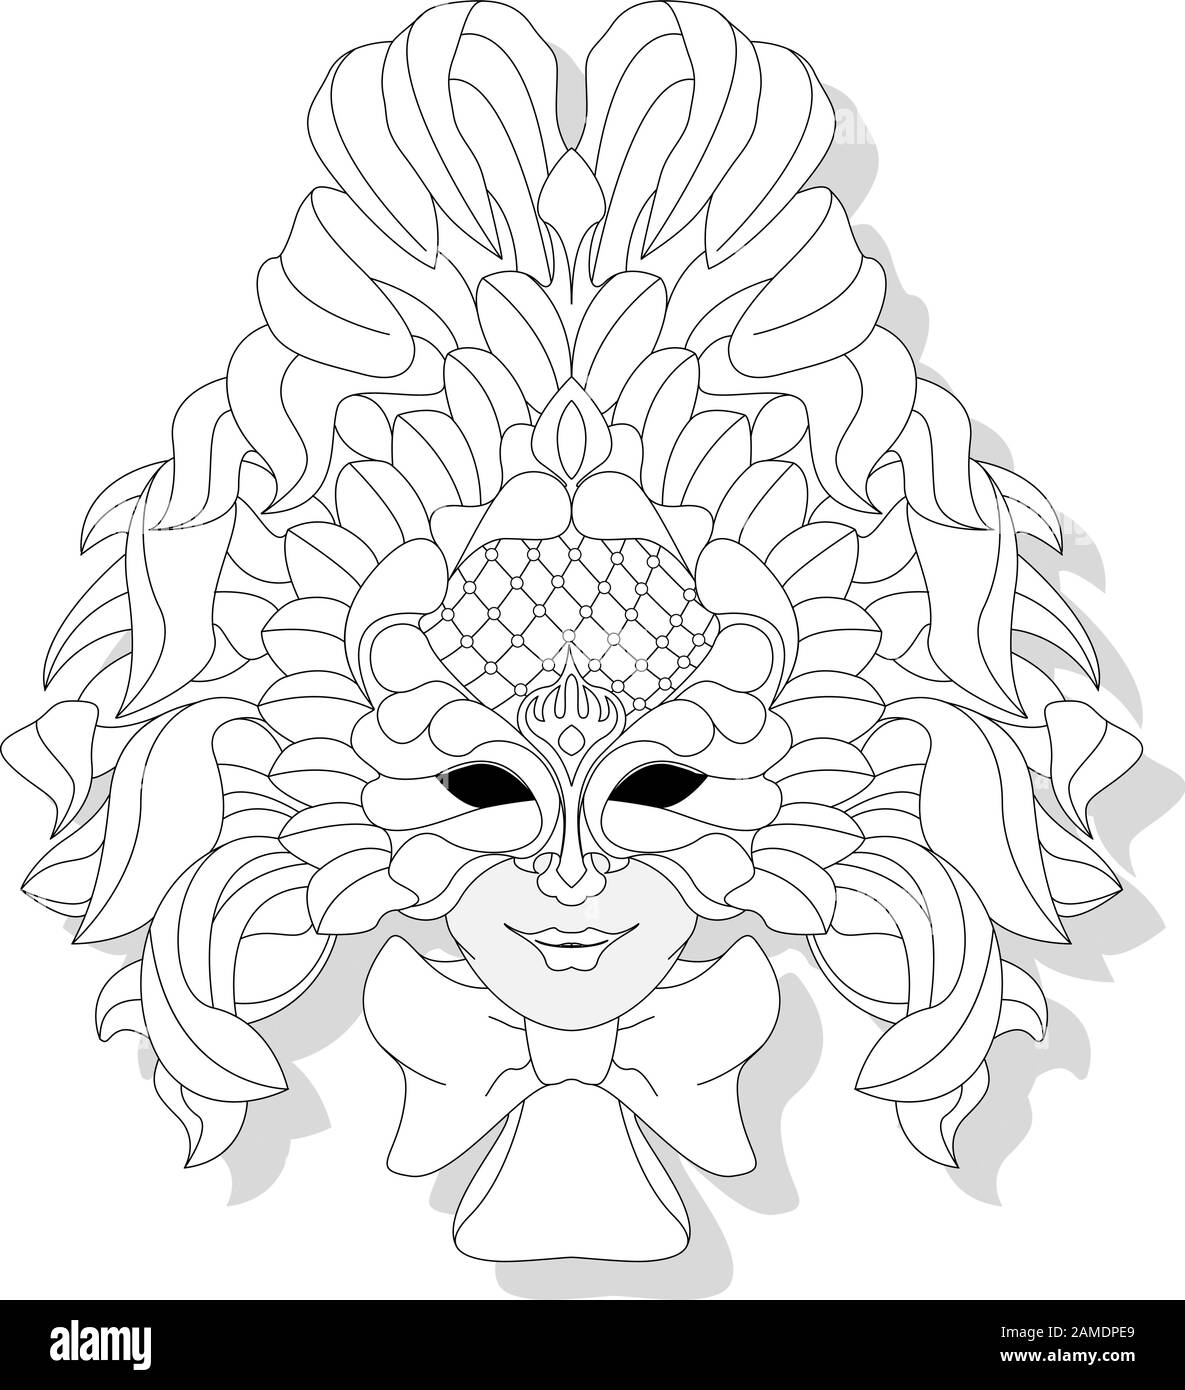 Stile joker maschera viso. Immagine vettoriale isolata su sfondo bianco. Colorazione pagina adulto. Illustrazione Vettoriale